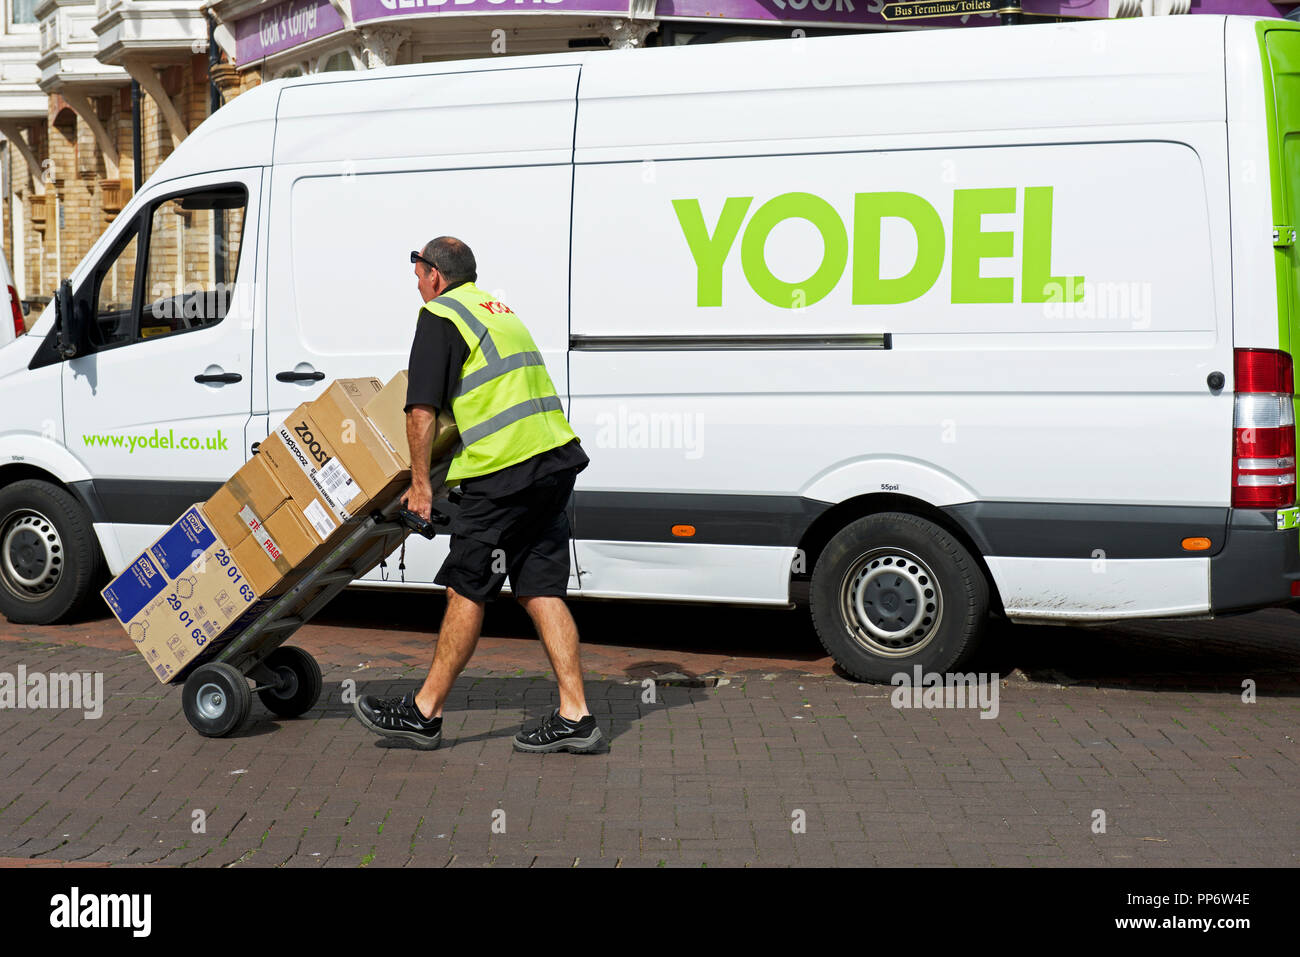 Yodel delivery van, England UK Stock Photo - Alamy